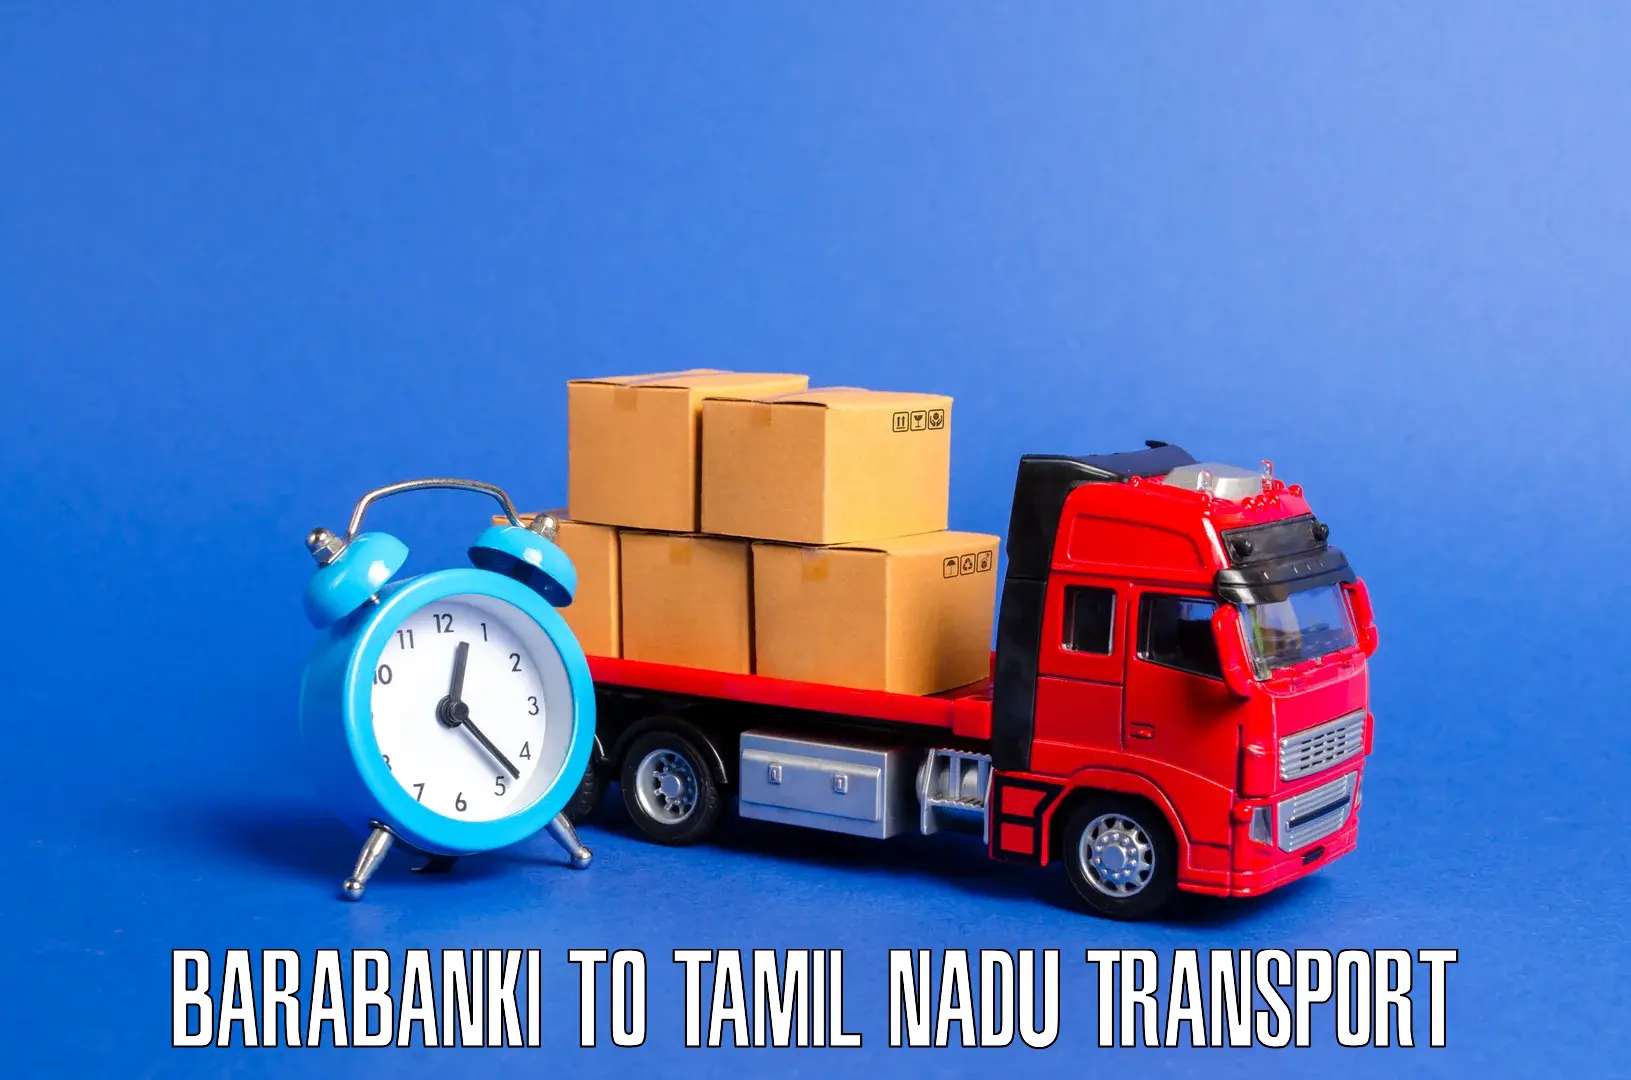 Online transport service Barabanki to Salem